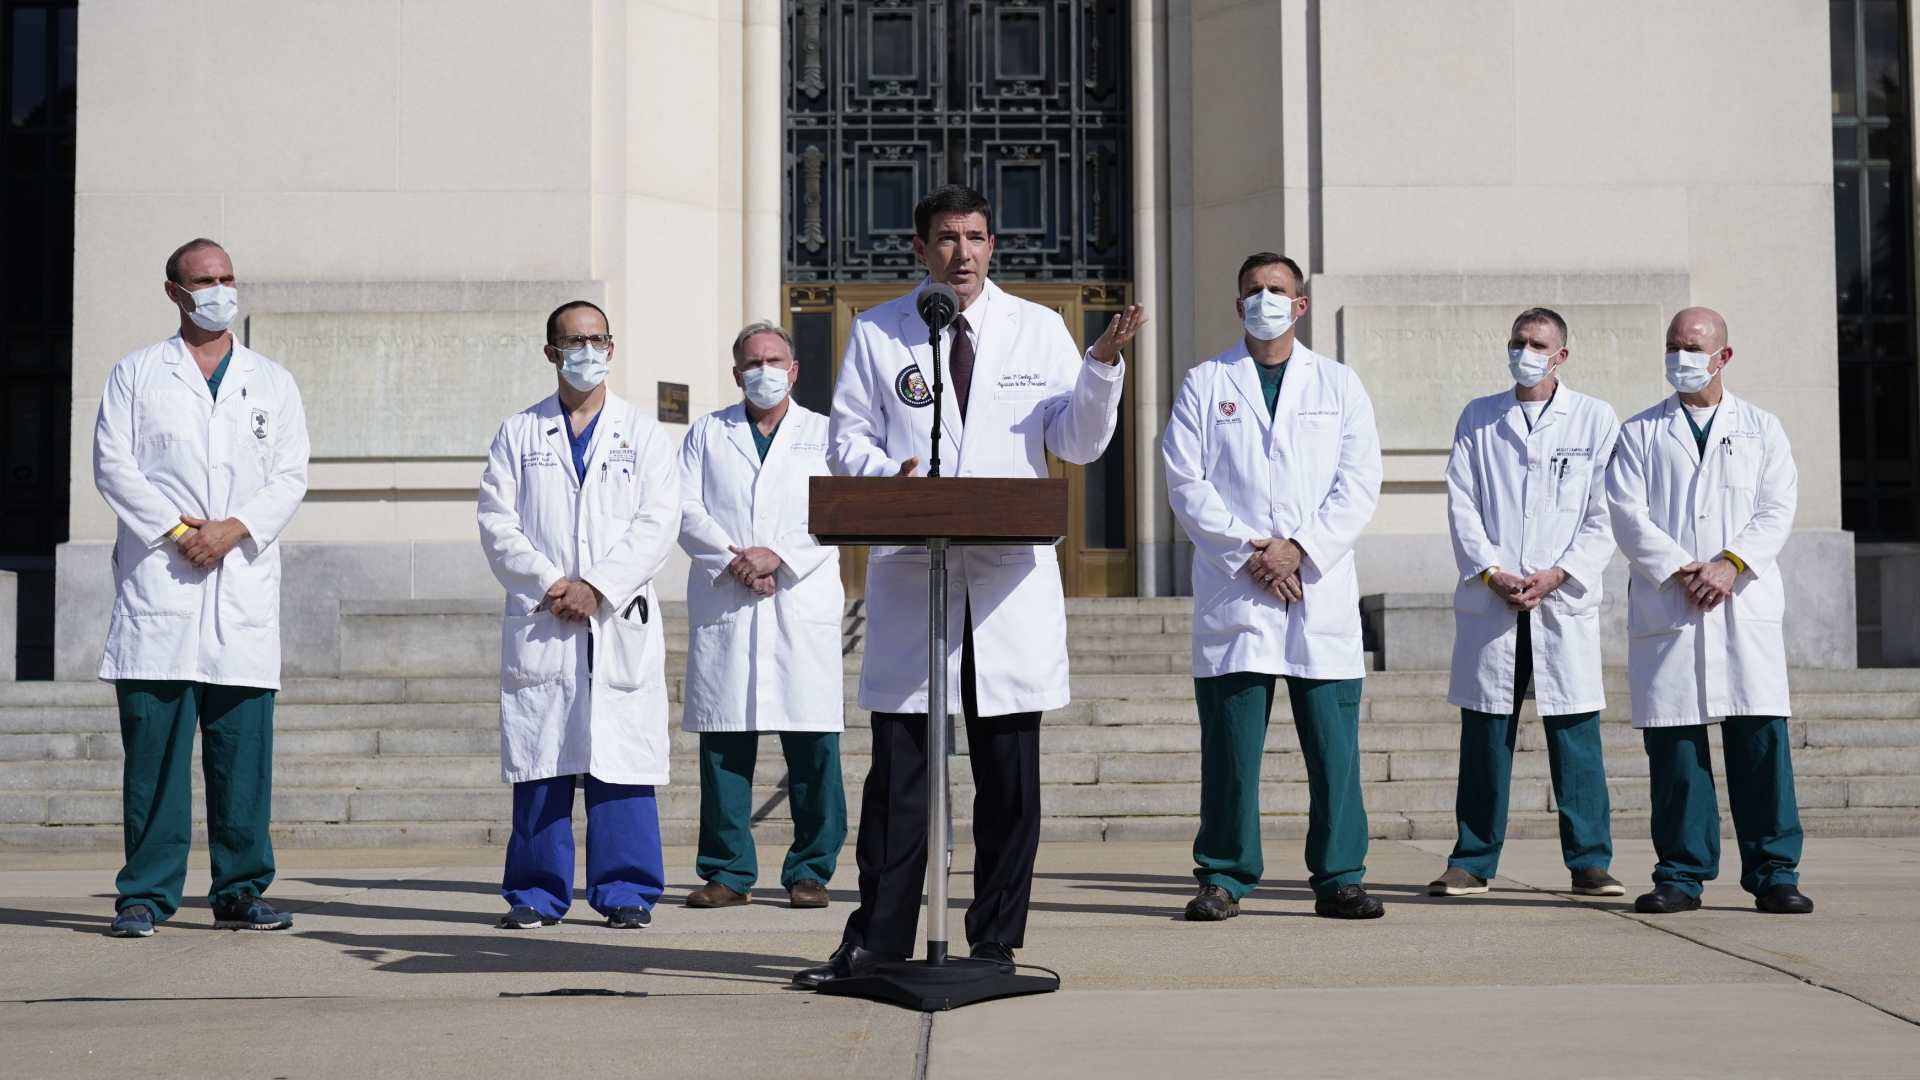 Der Arzt von US-Präsident Trump, Sean Conley, bei einer Erklärung vor dem Walter-Reed-Militärkrankenhaus in Bethesda nördlich von Washington | Chris Kleponis/POOL/EPA-EFE/Shut